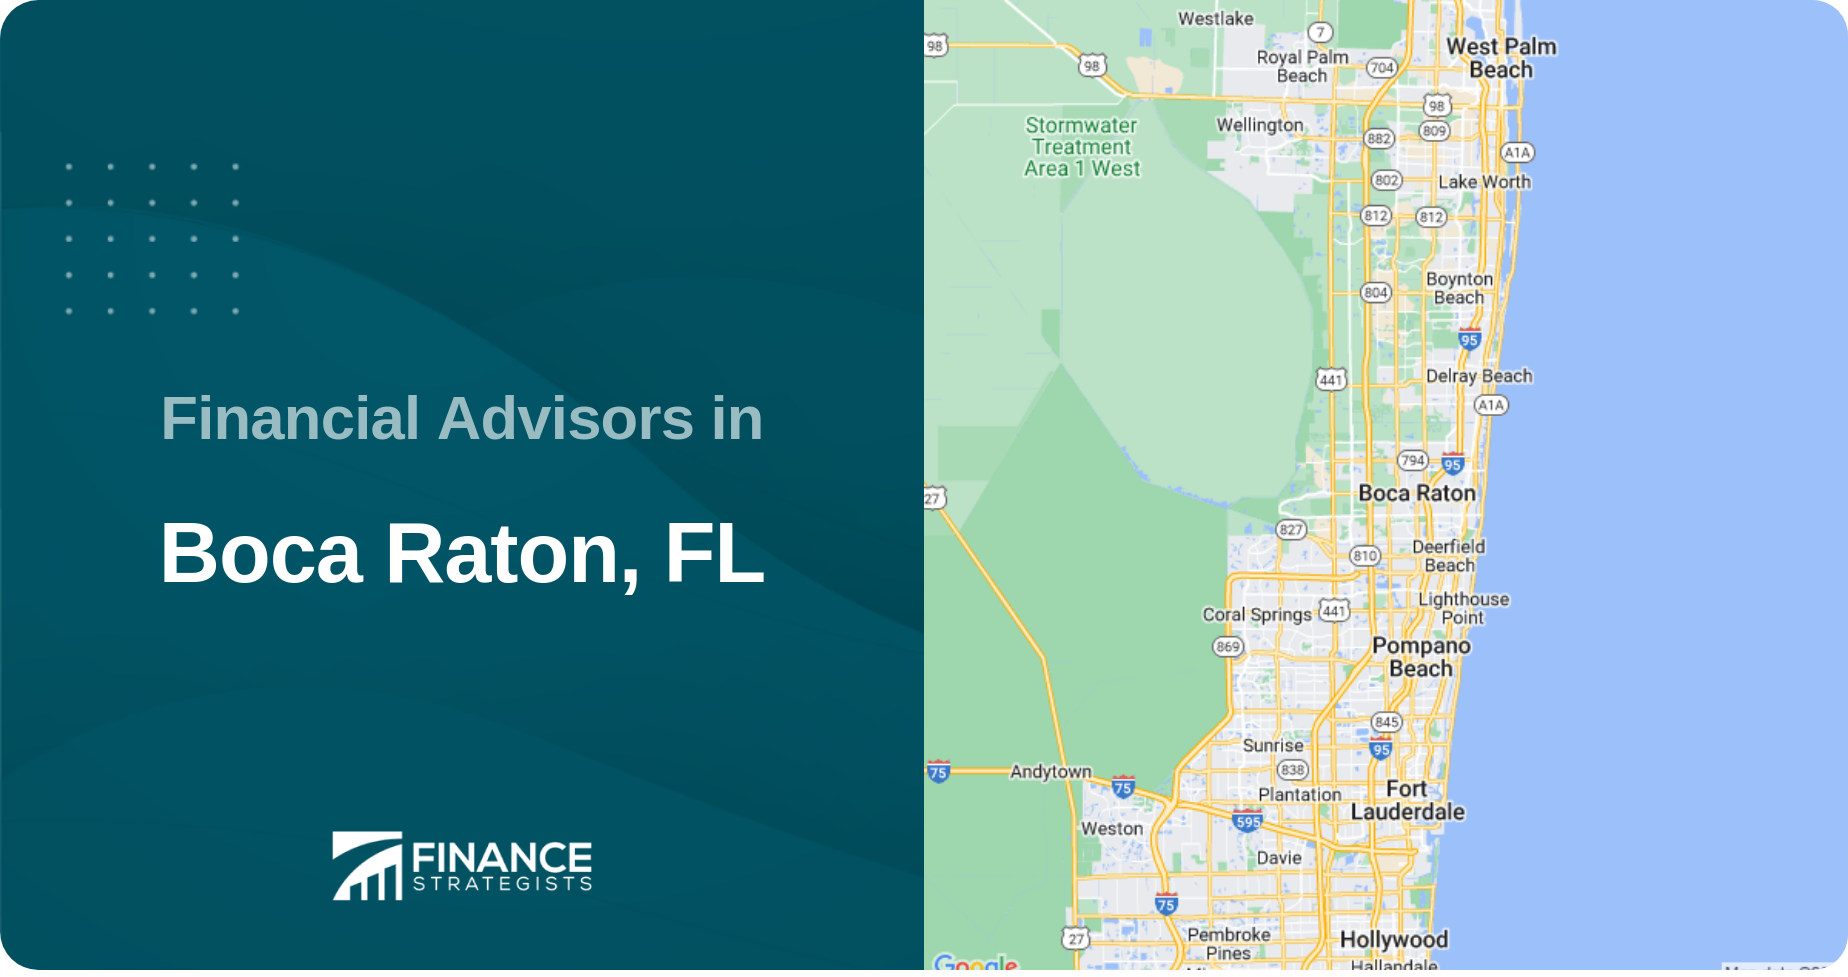 Financial Advisors in Boca Raton, FL